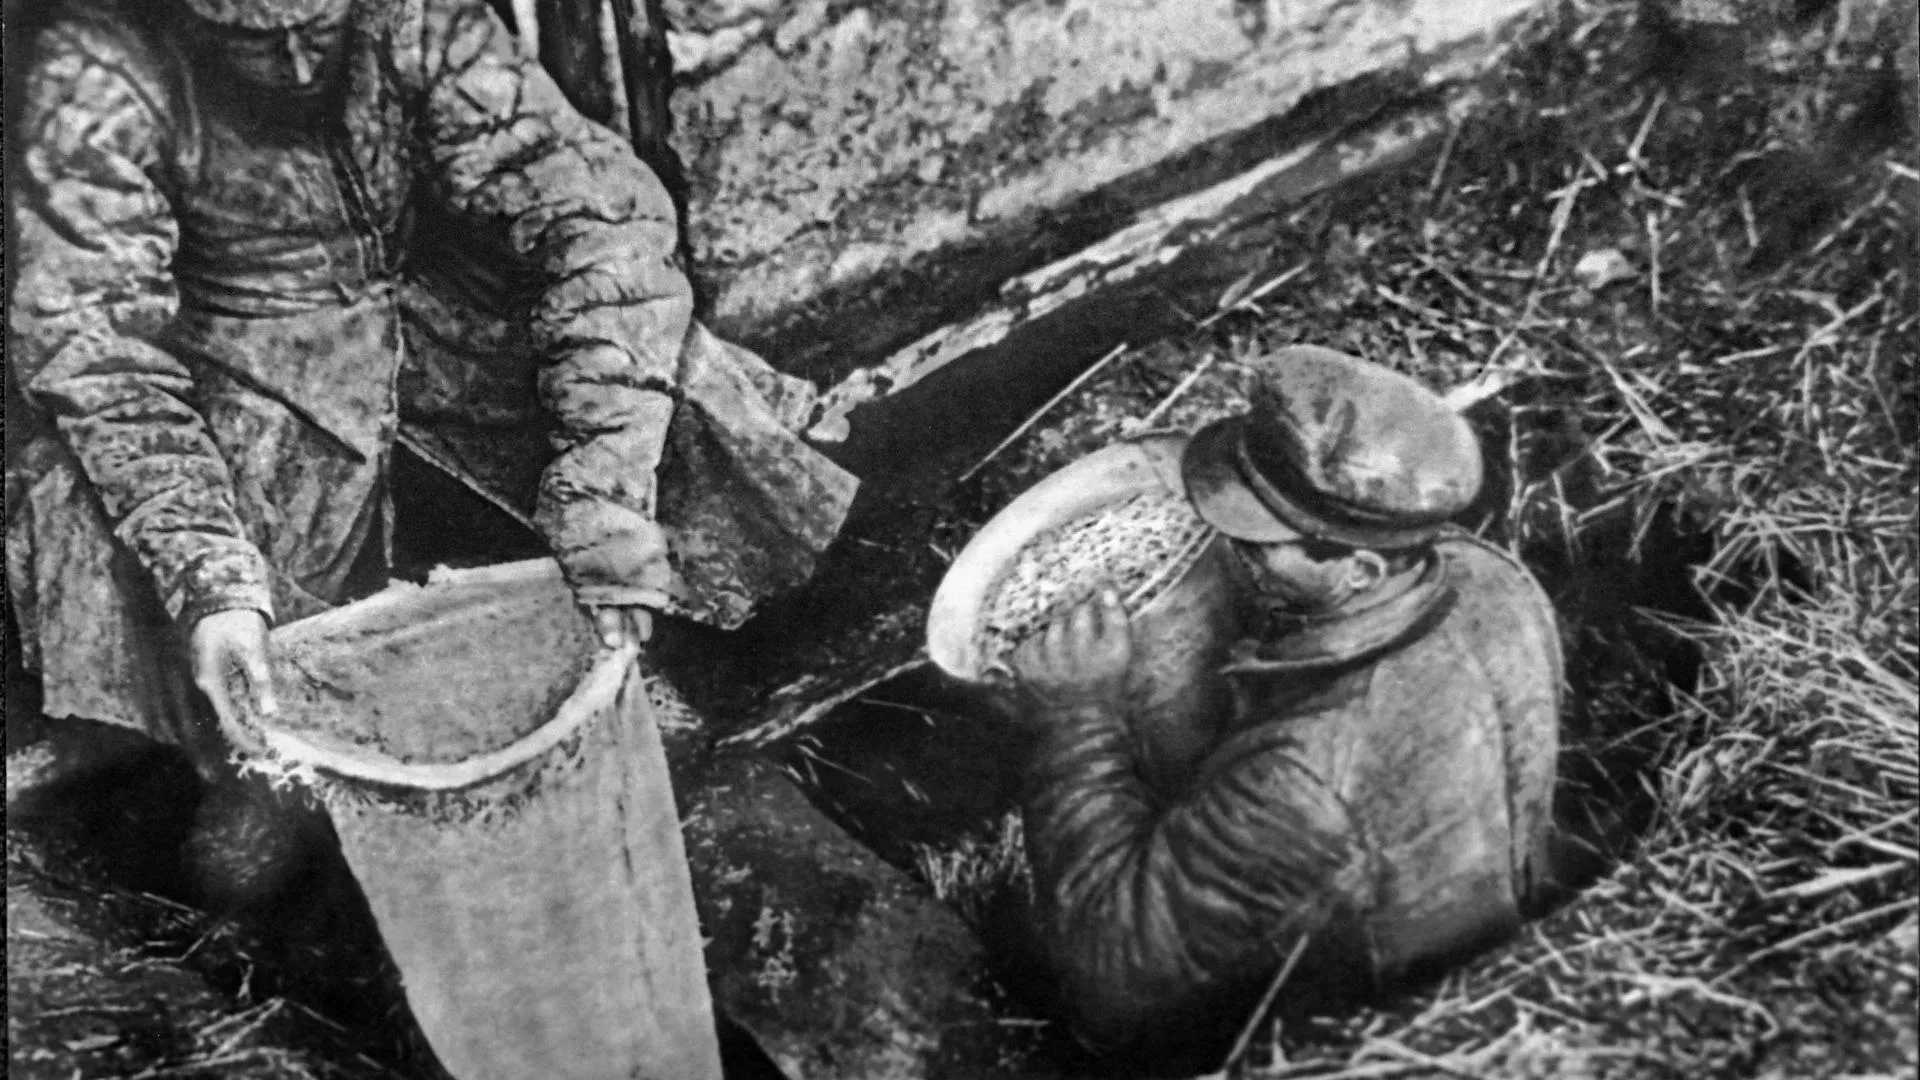 Работники ОГПУ извлекают из ямы спрятанное зерно, 1932 год. Государственный музей политической истории России